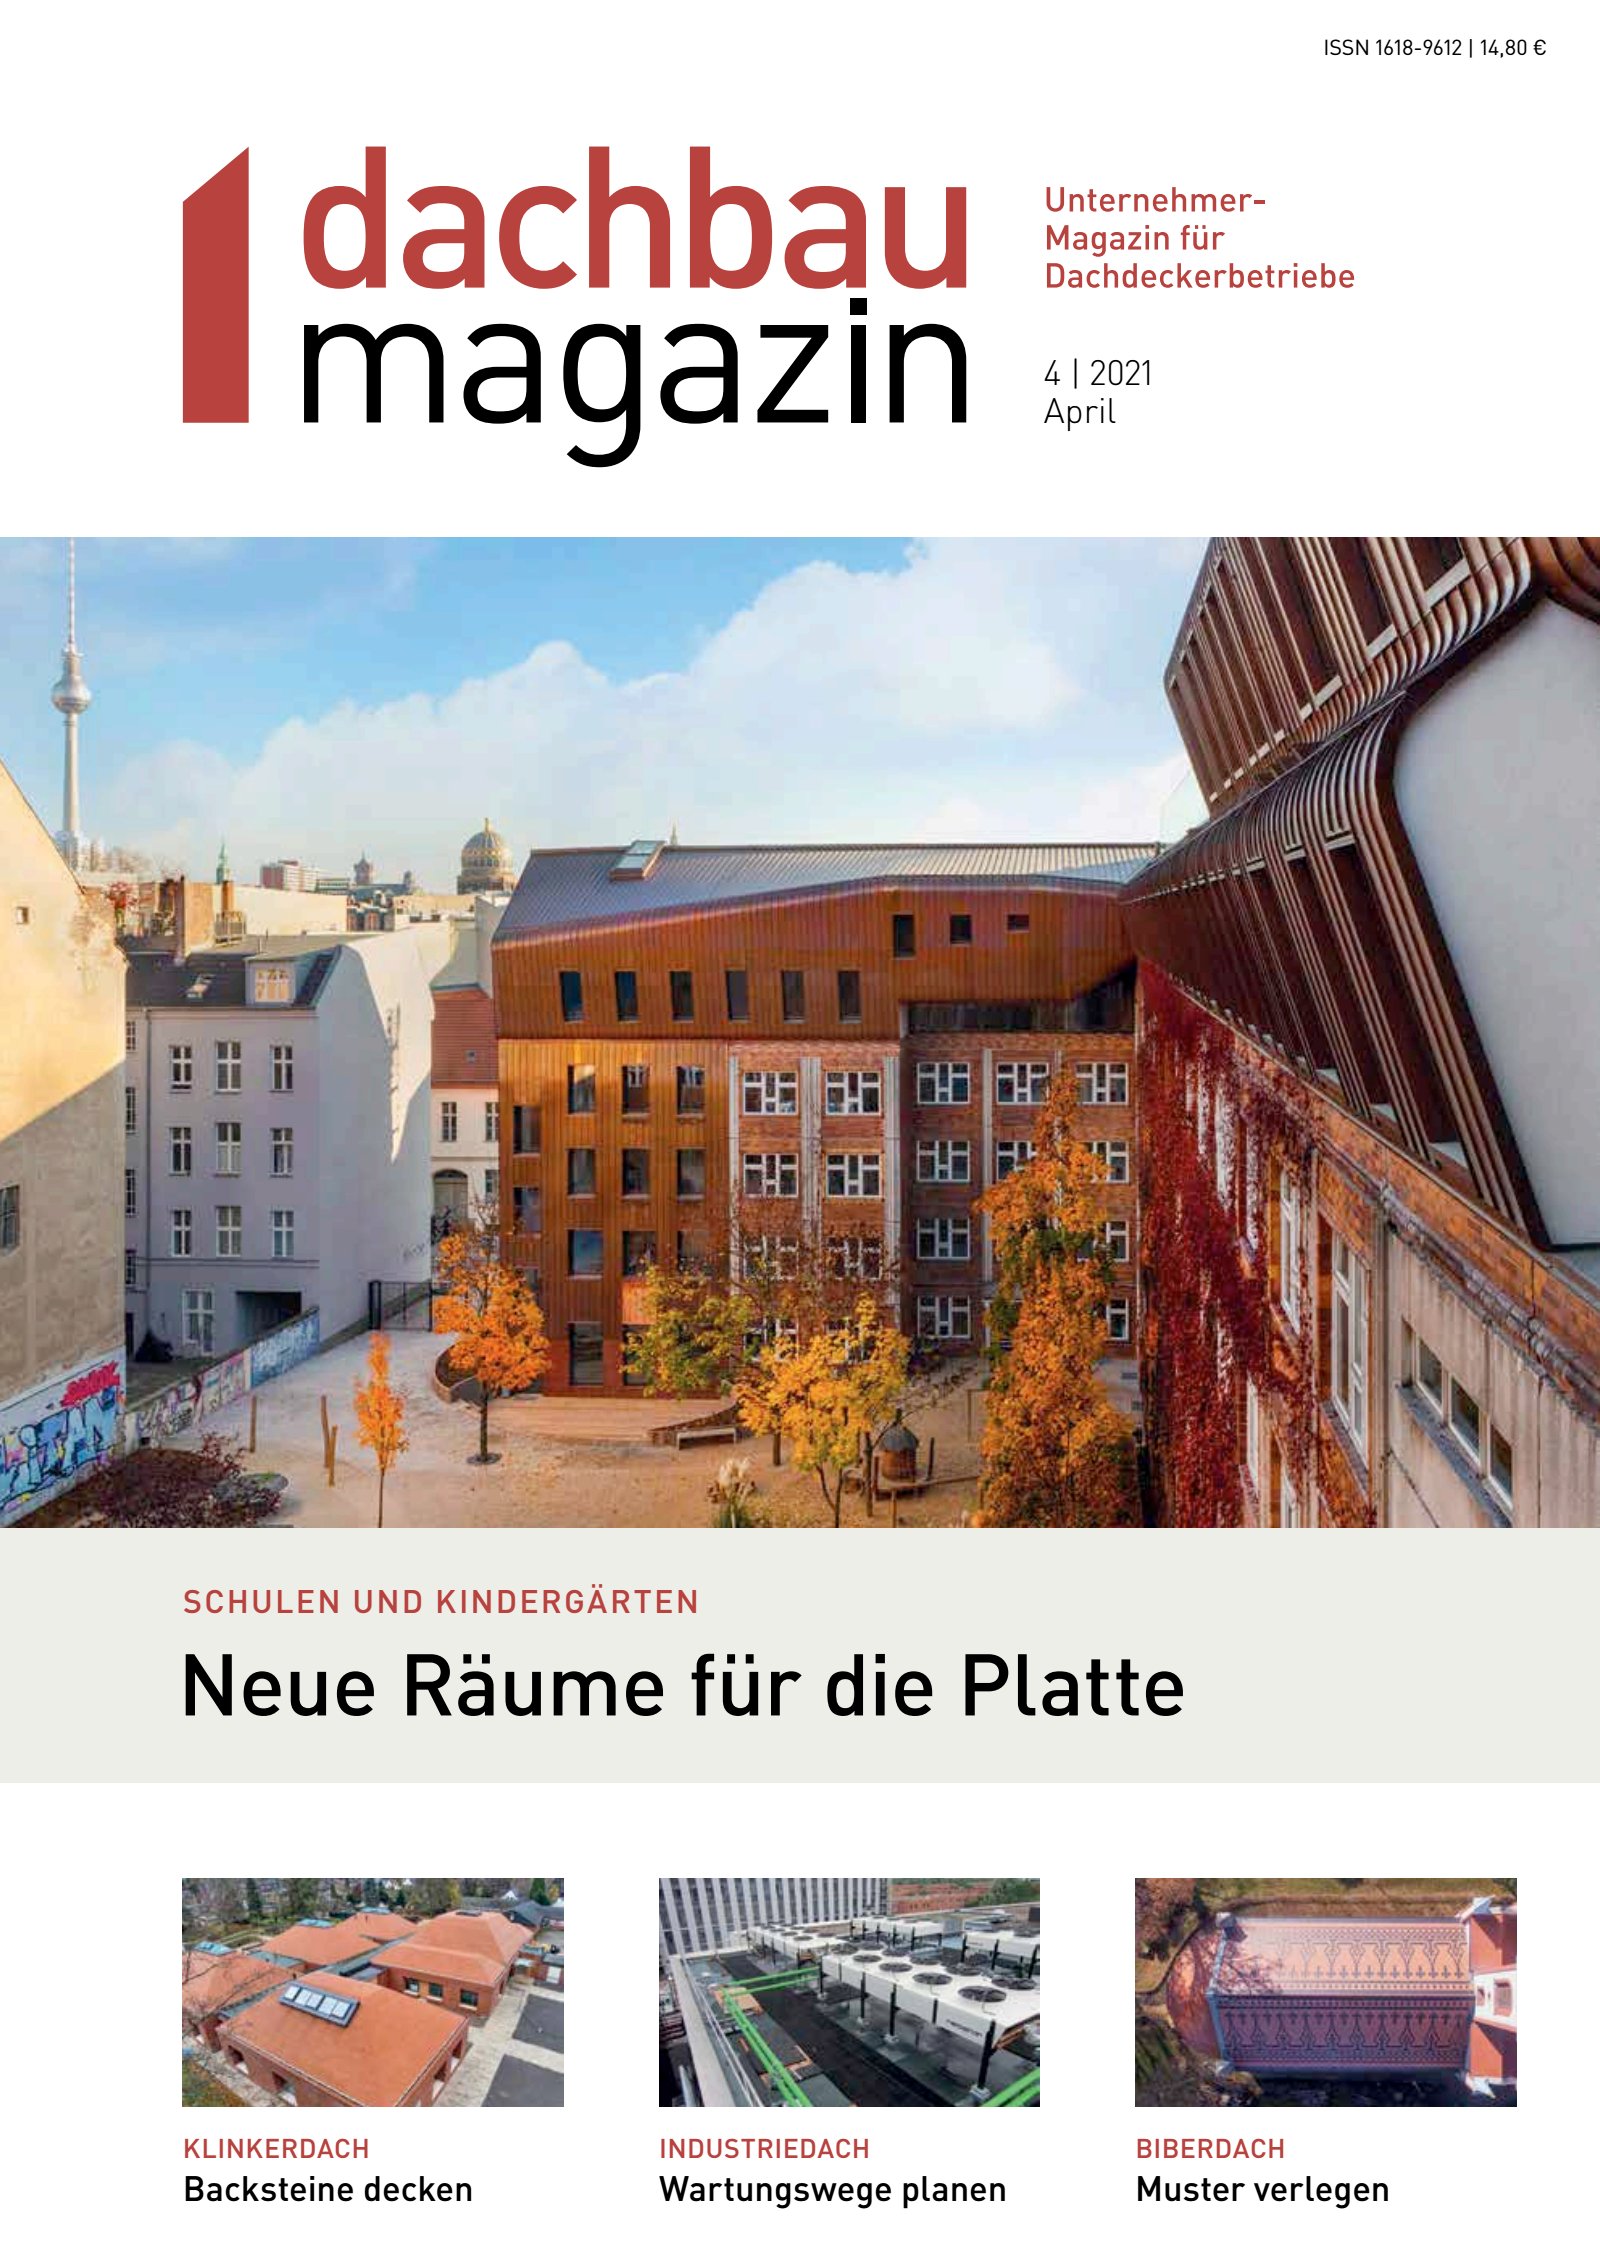 dachbau magazin 04/2021 Digital